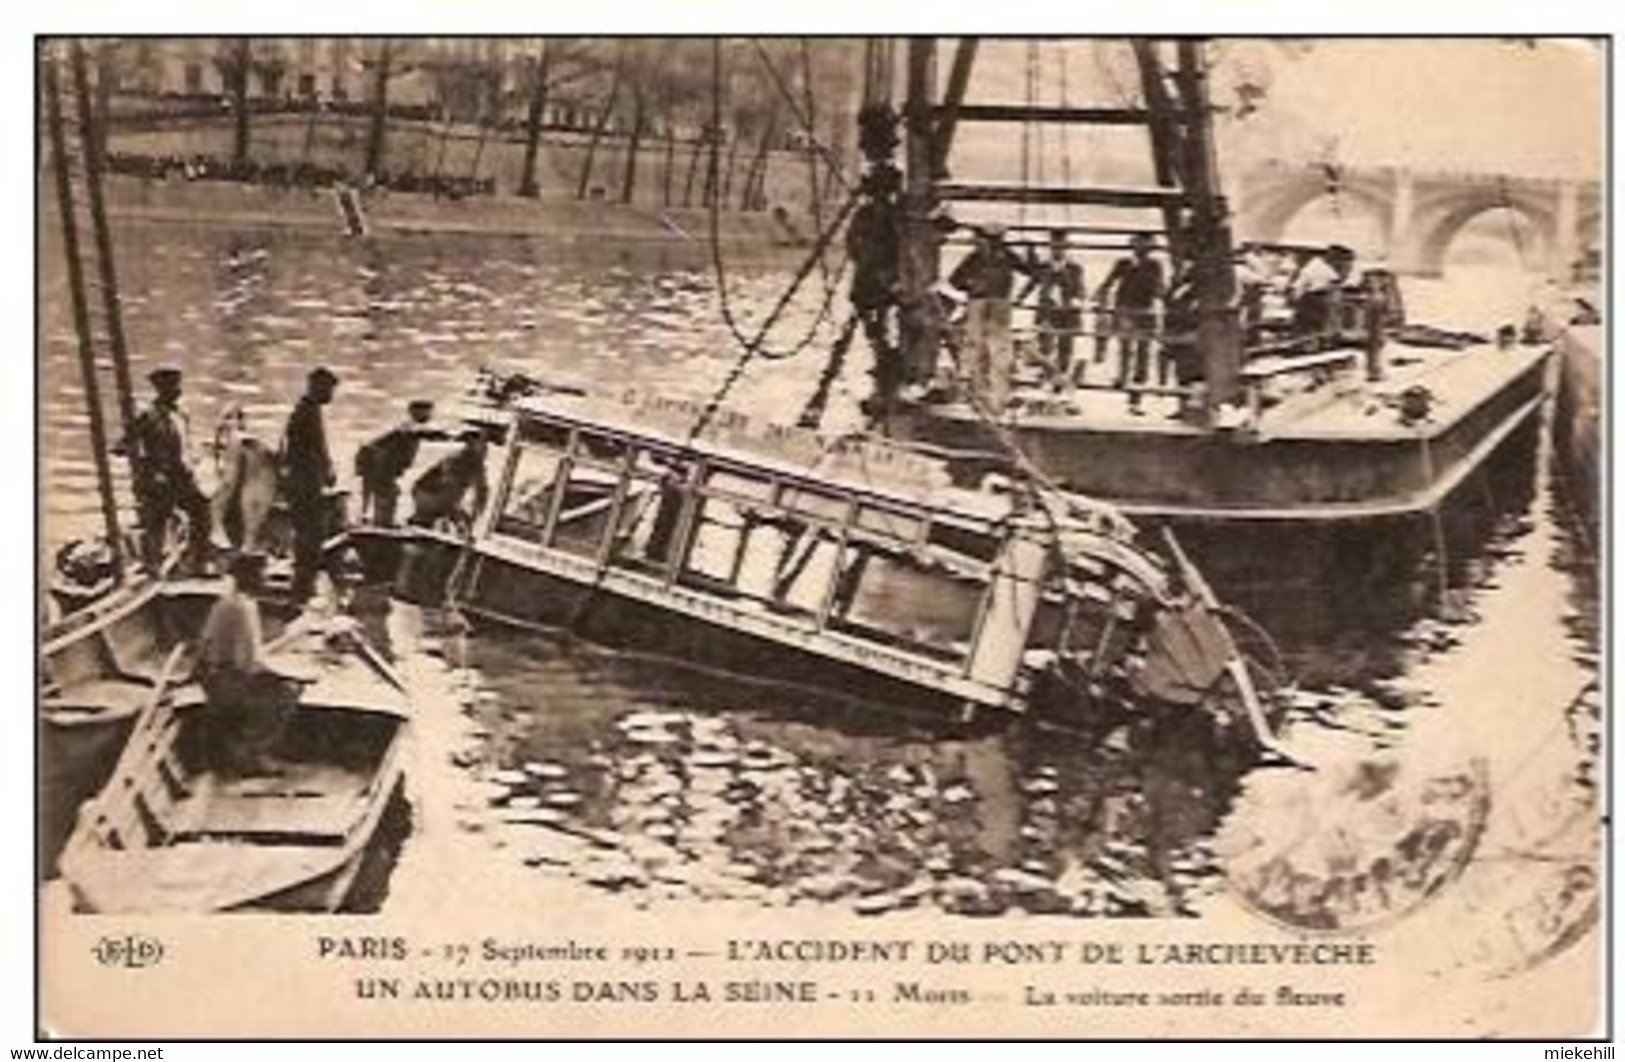 75-PARIS 1911-AUTOBUS TOMBE DU PONT DE L'ARCHEVECHE DANS LA SEINE - Catastrophes